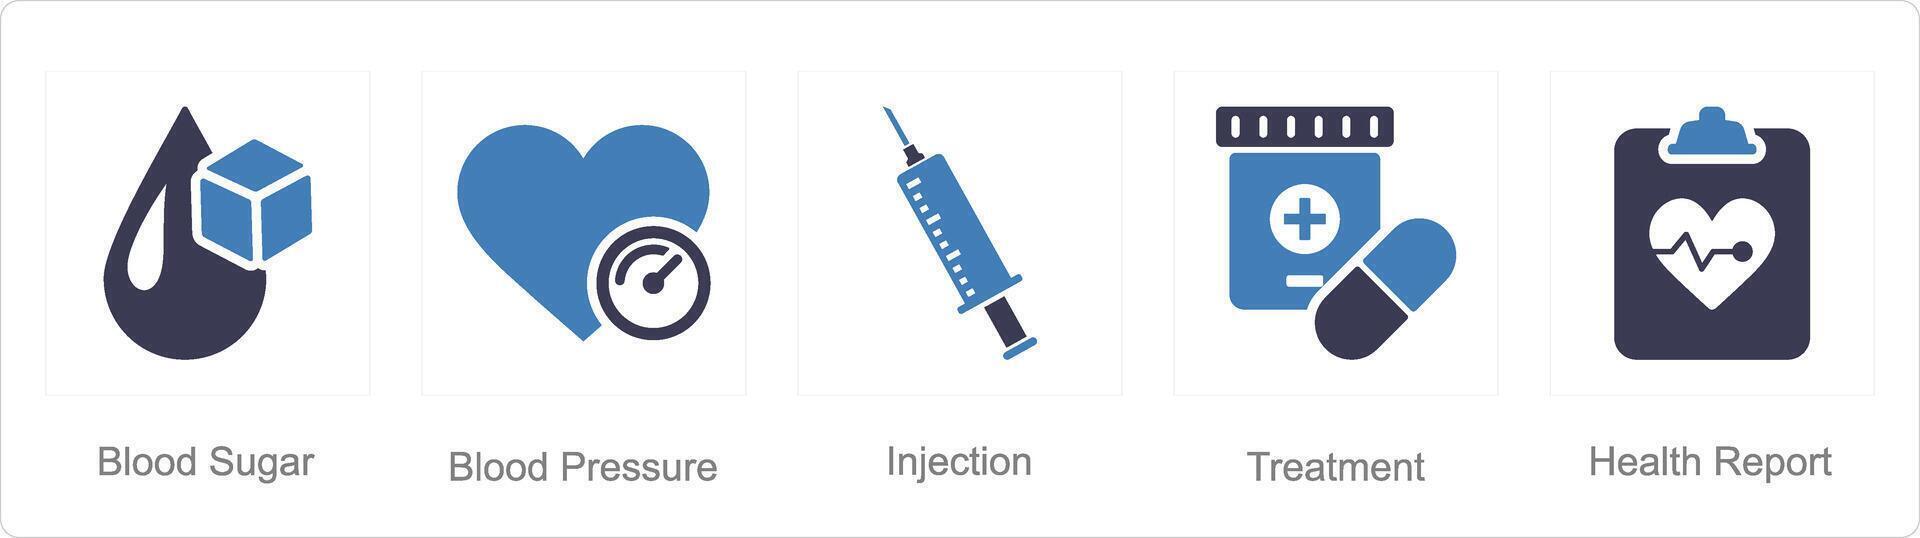 uma conjunto do 5 saúde checar ícones Como sangue açúcar, sangue pressão, injeção vetor